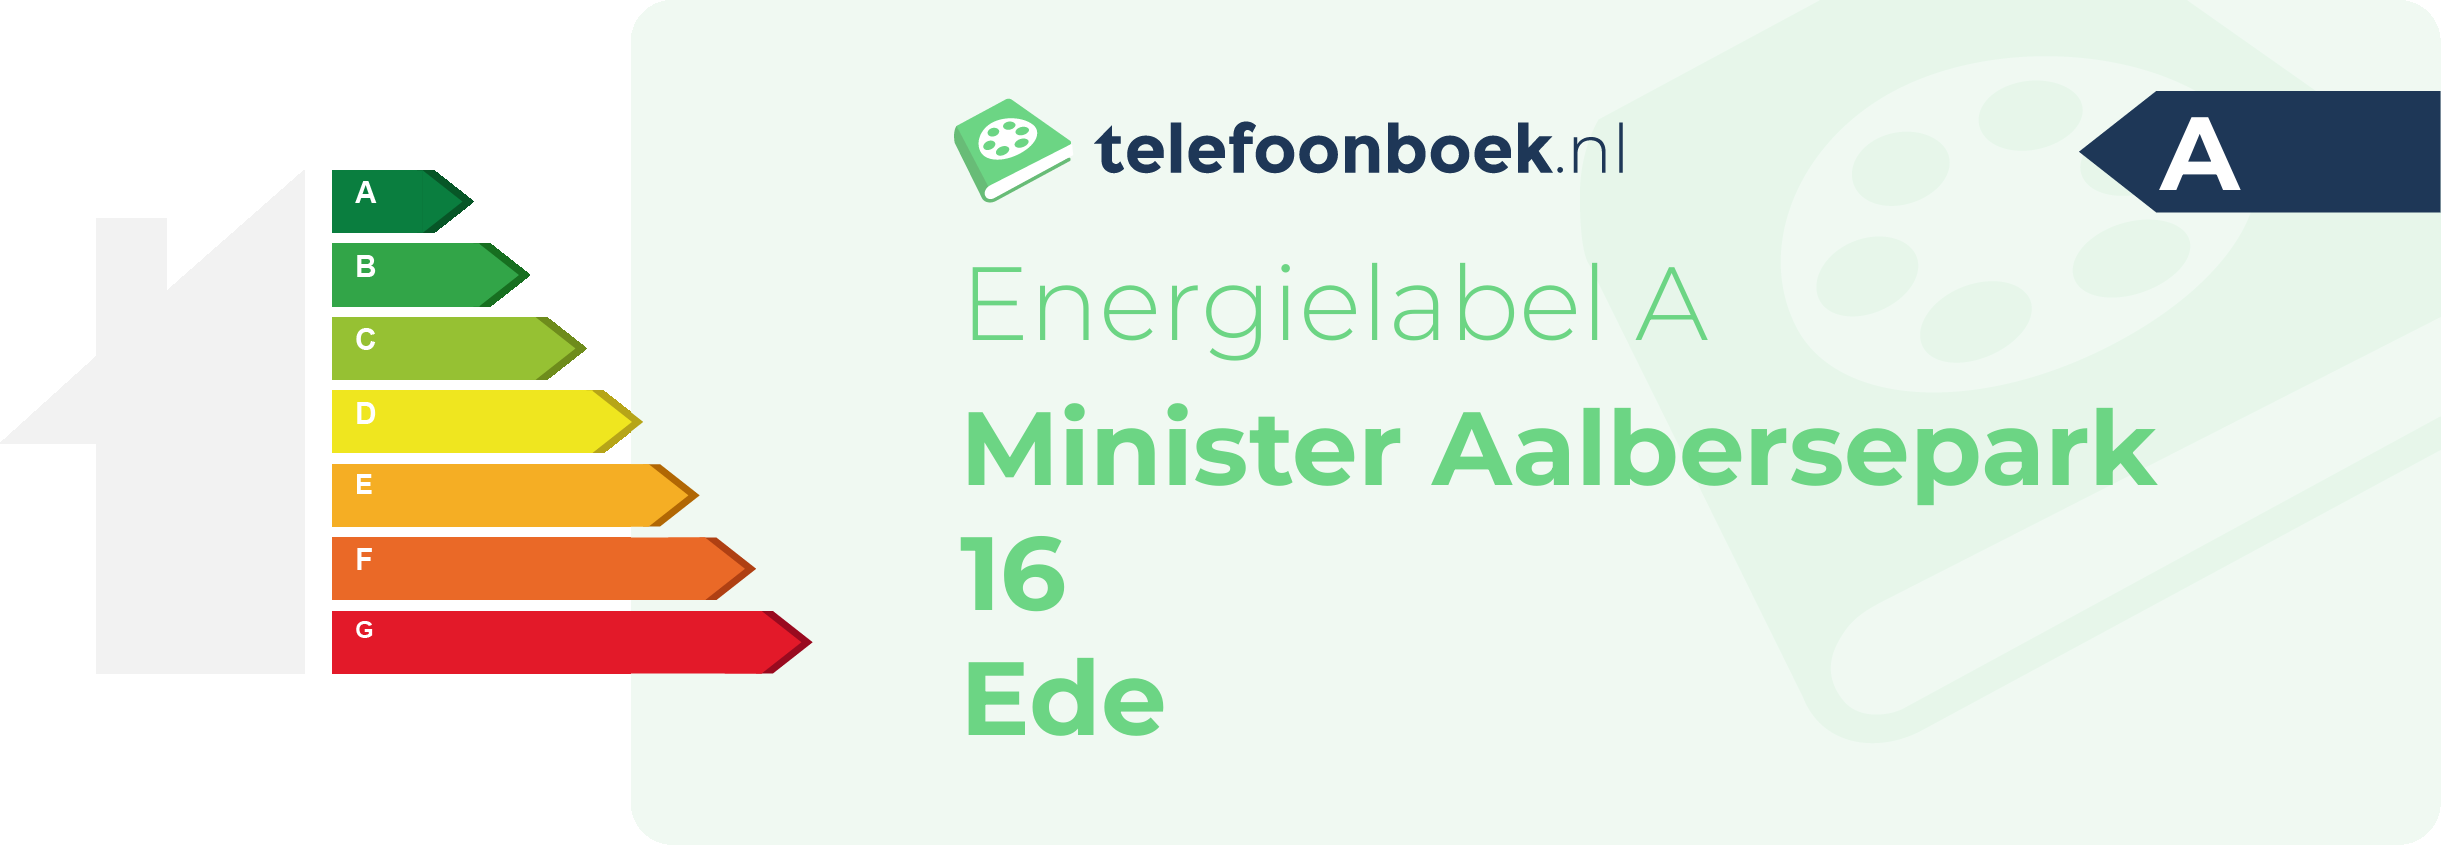 Energielabel Minister Aalbersepark 16 Ede